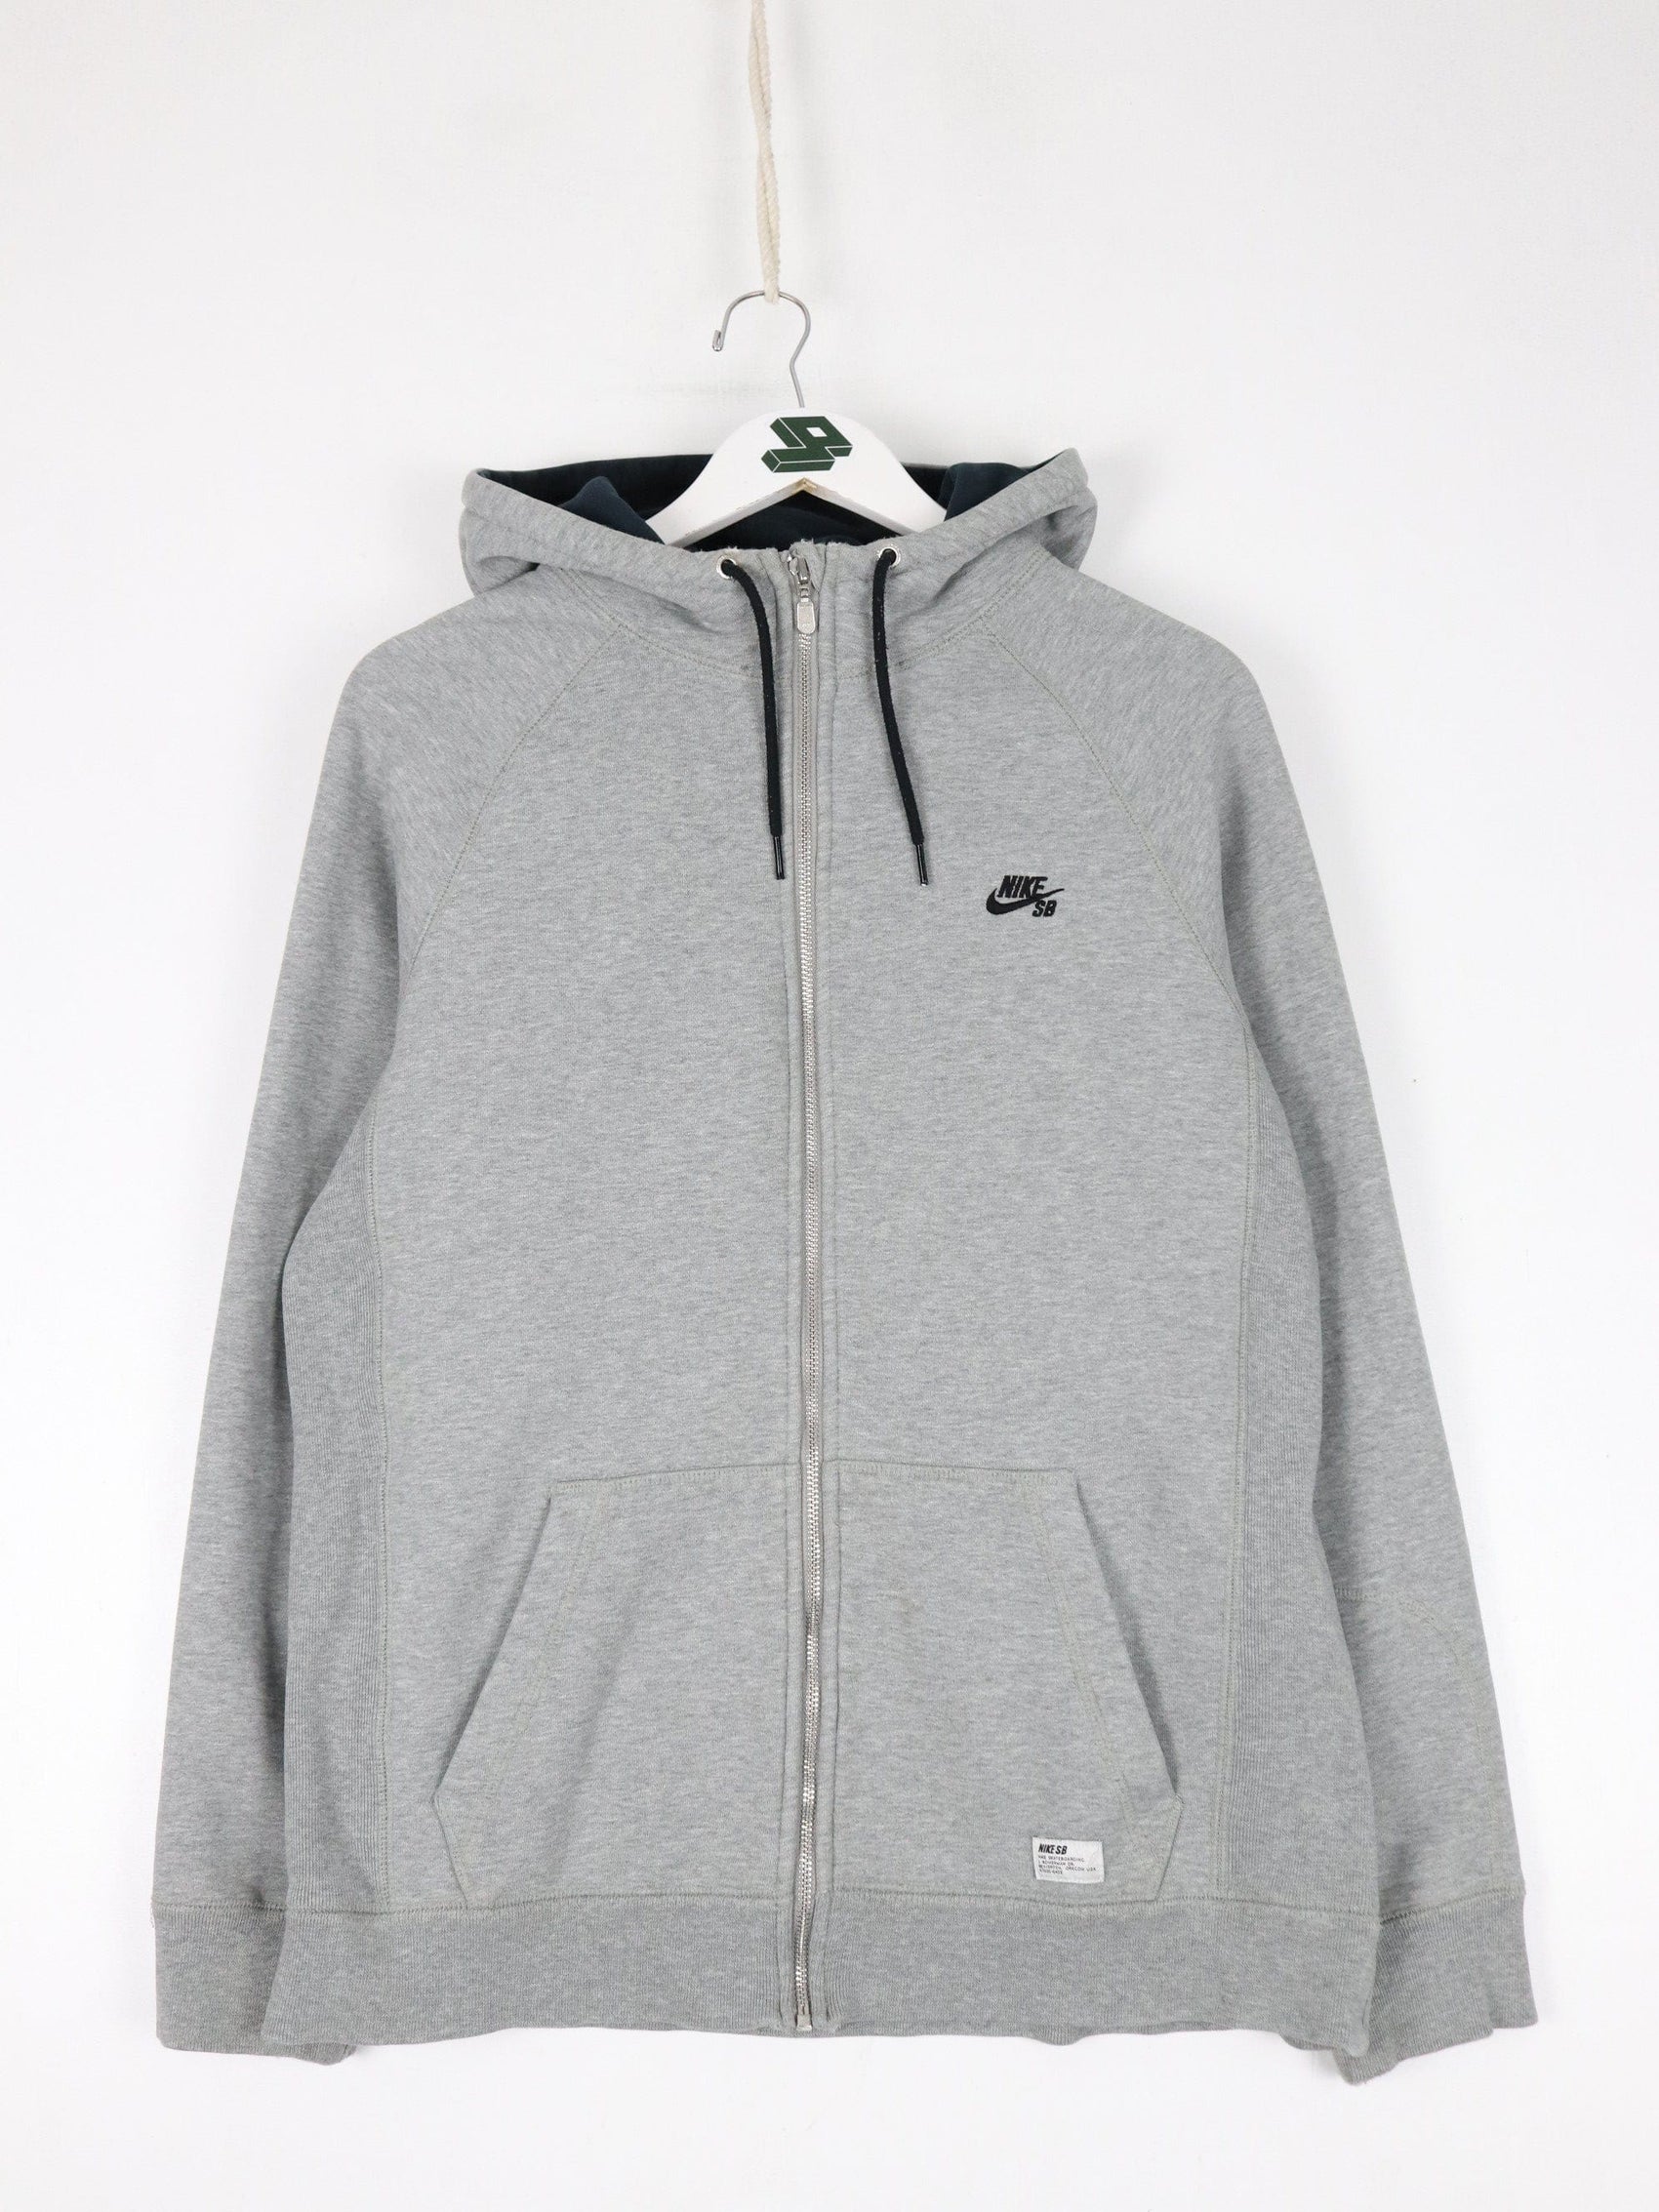 Nike Sweatshirts & Hoodies Nike SB Sweatshirt Mens Medium Grey Full Zip Hoodie